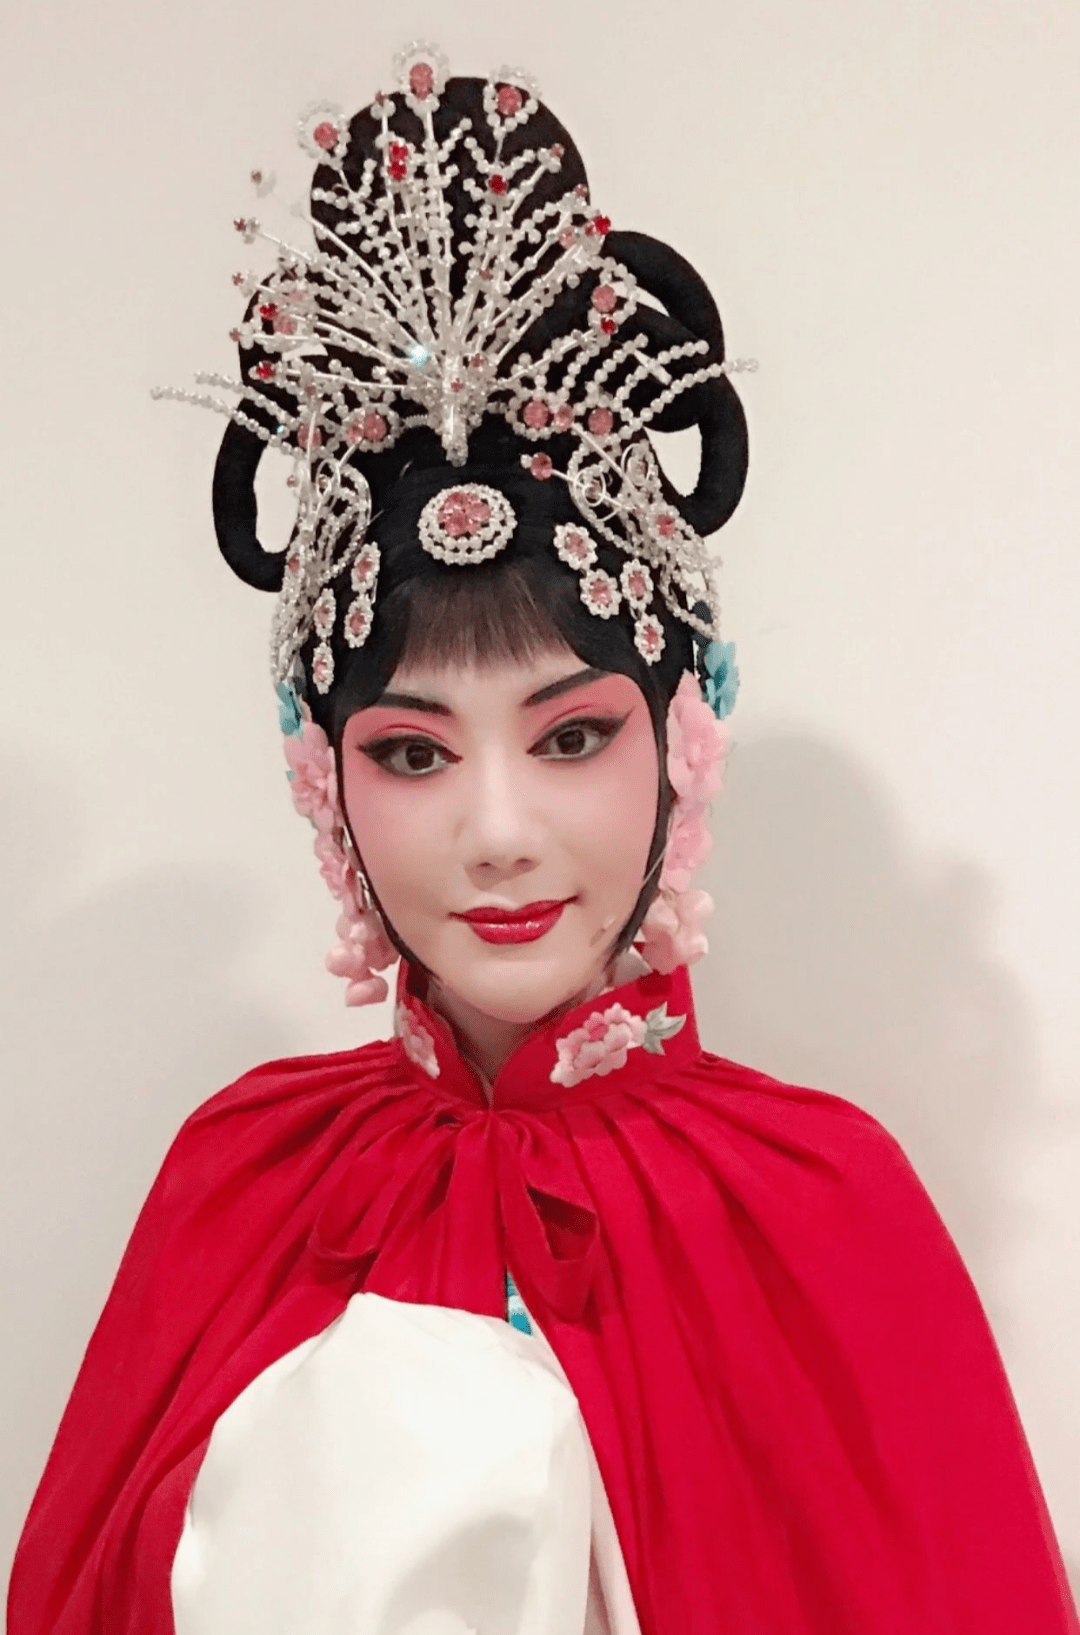 另一位化妆师陈艾力, 在从事化妆之前也是一名戏曲演员, 从艺多年她